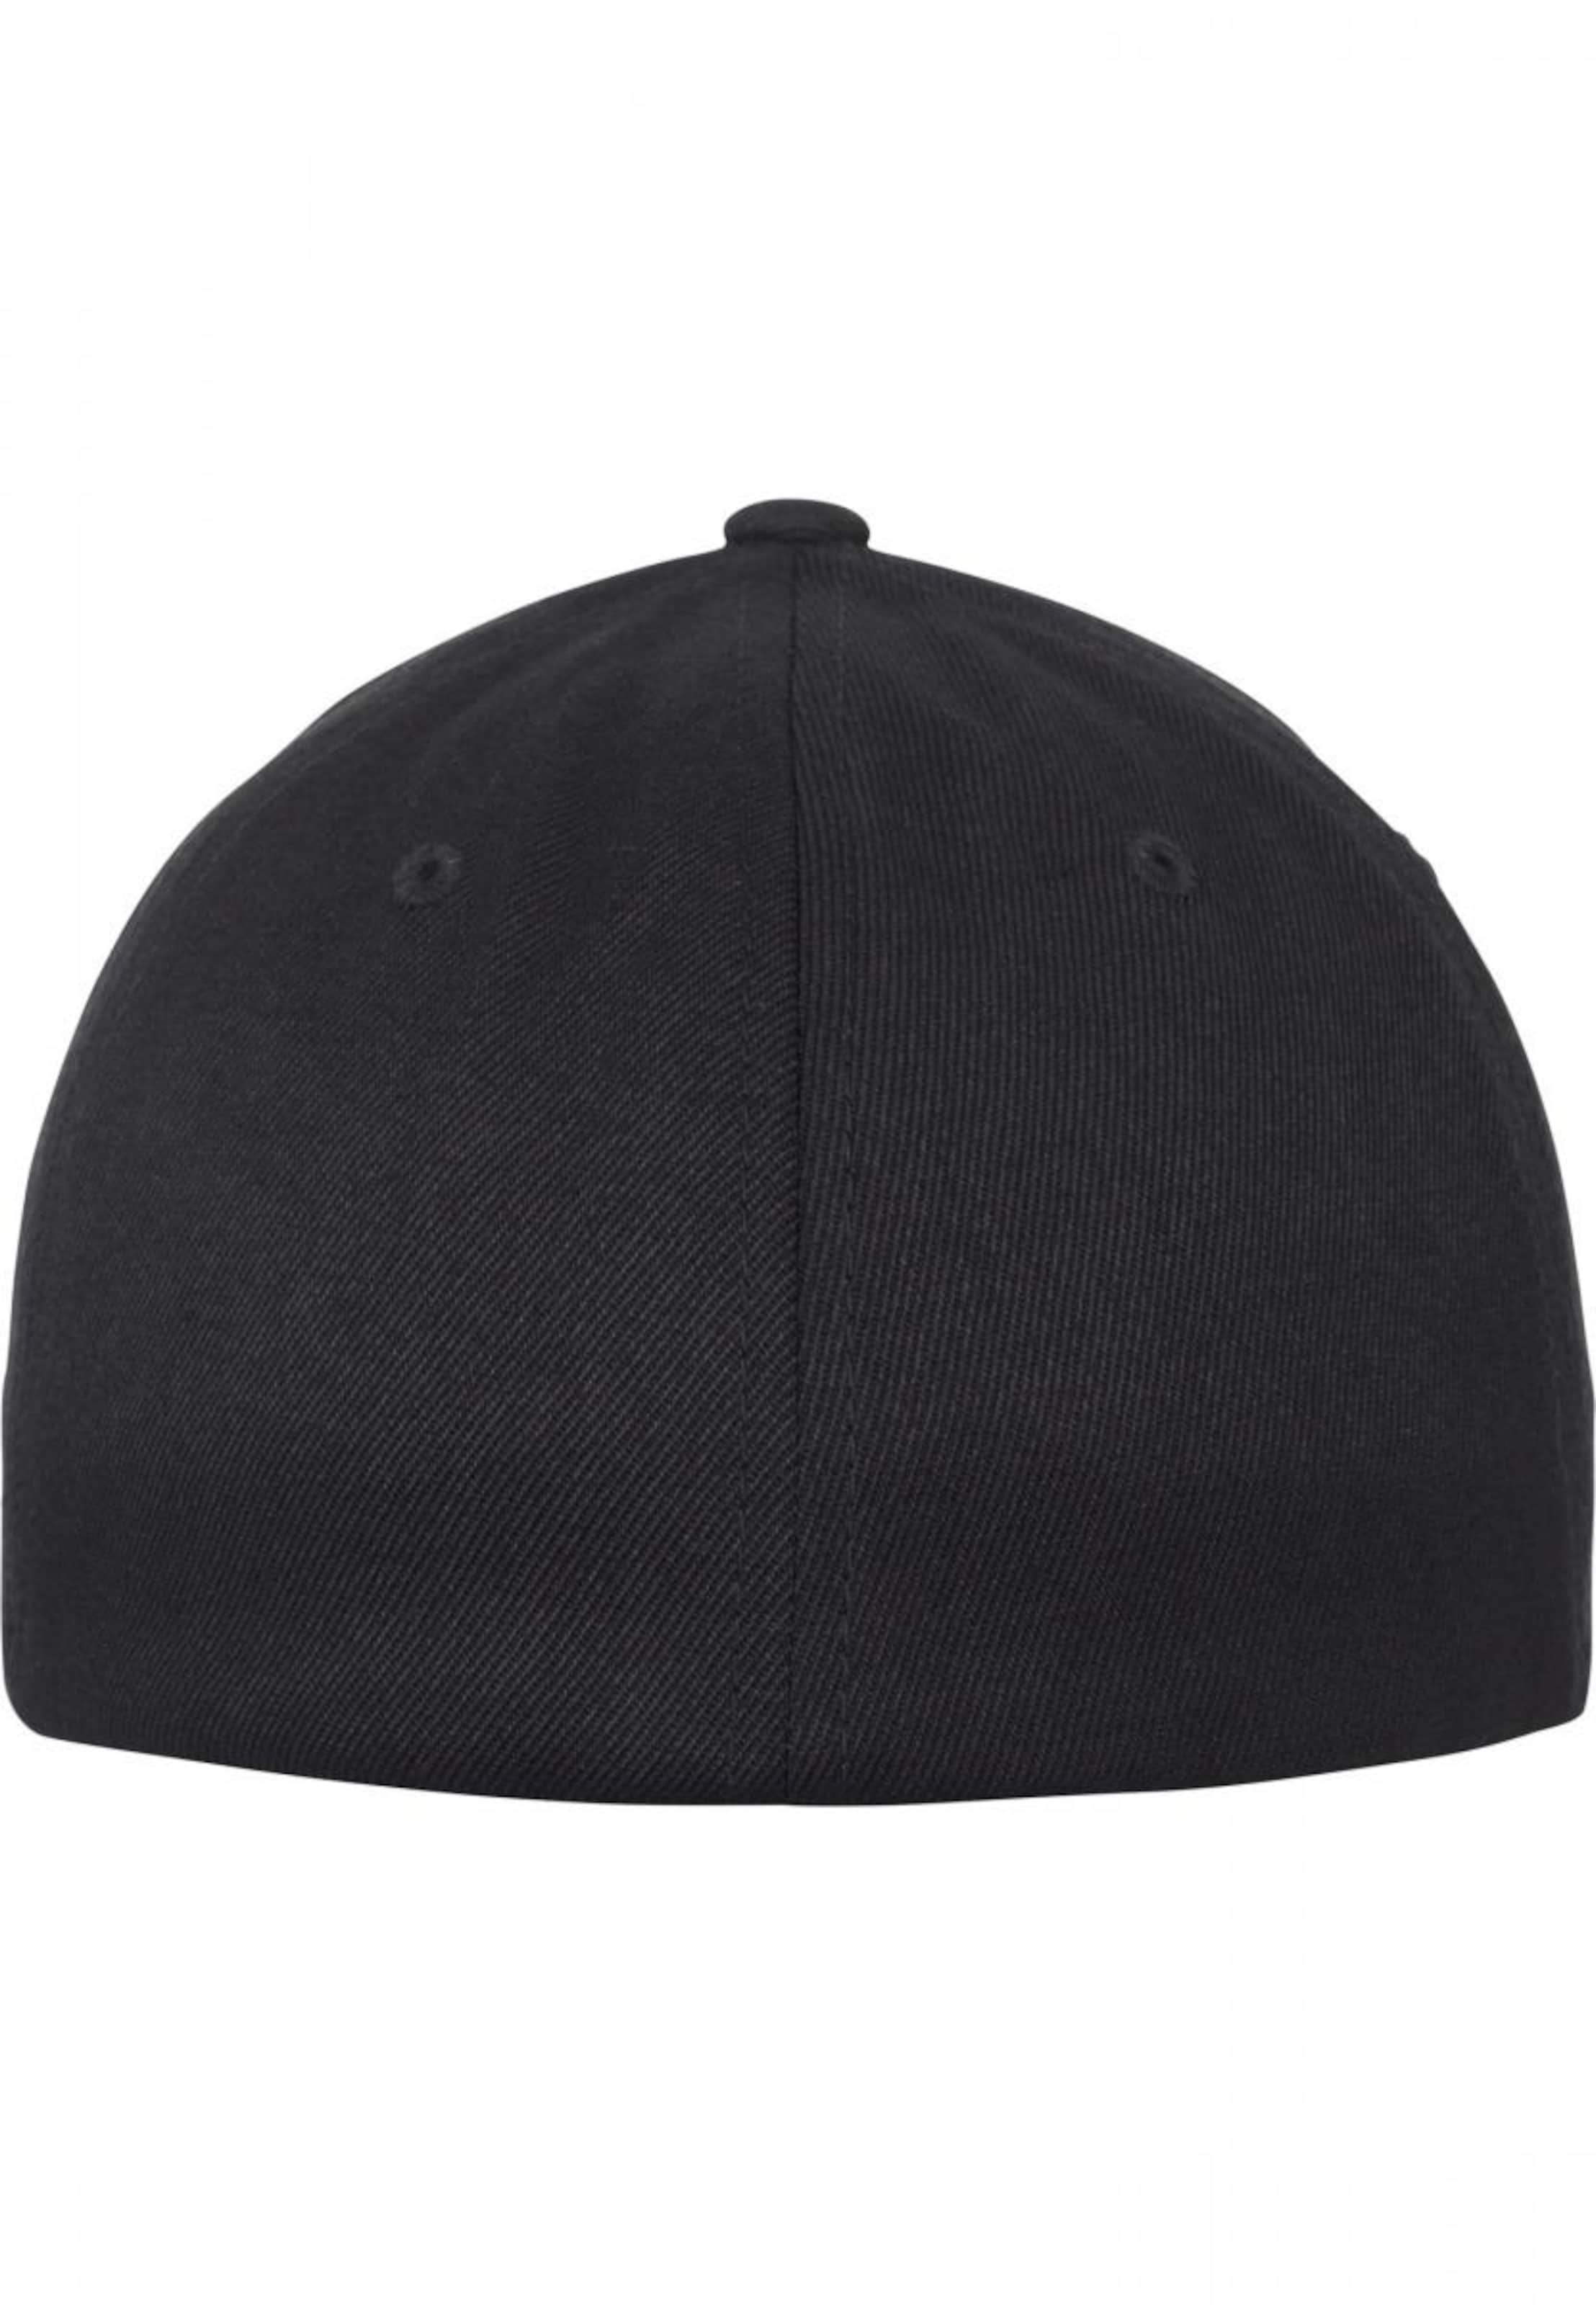 Casquettes et bonnets Casquette Wool Blend Flexfit en Noir 